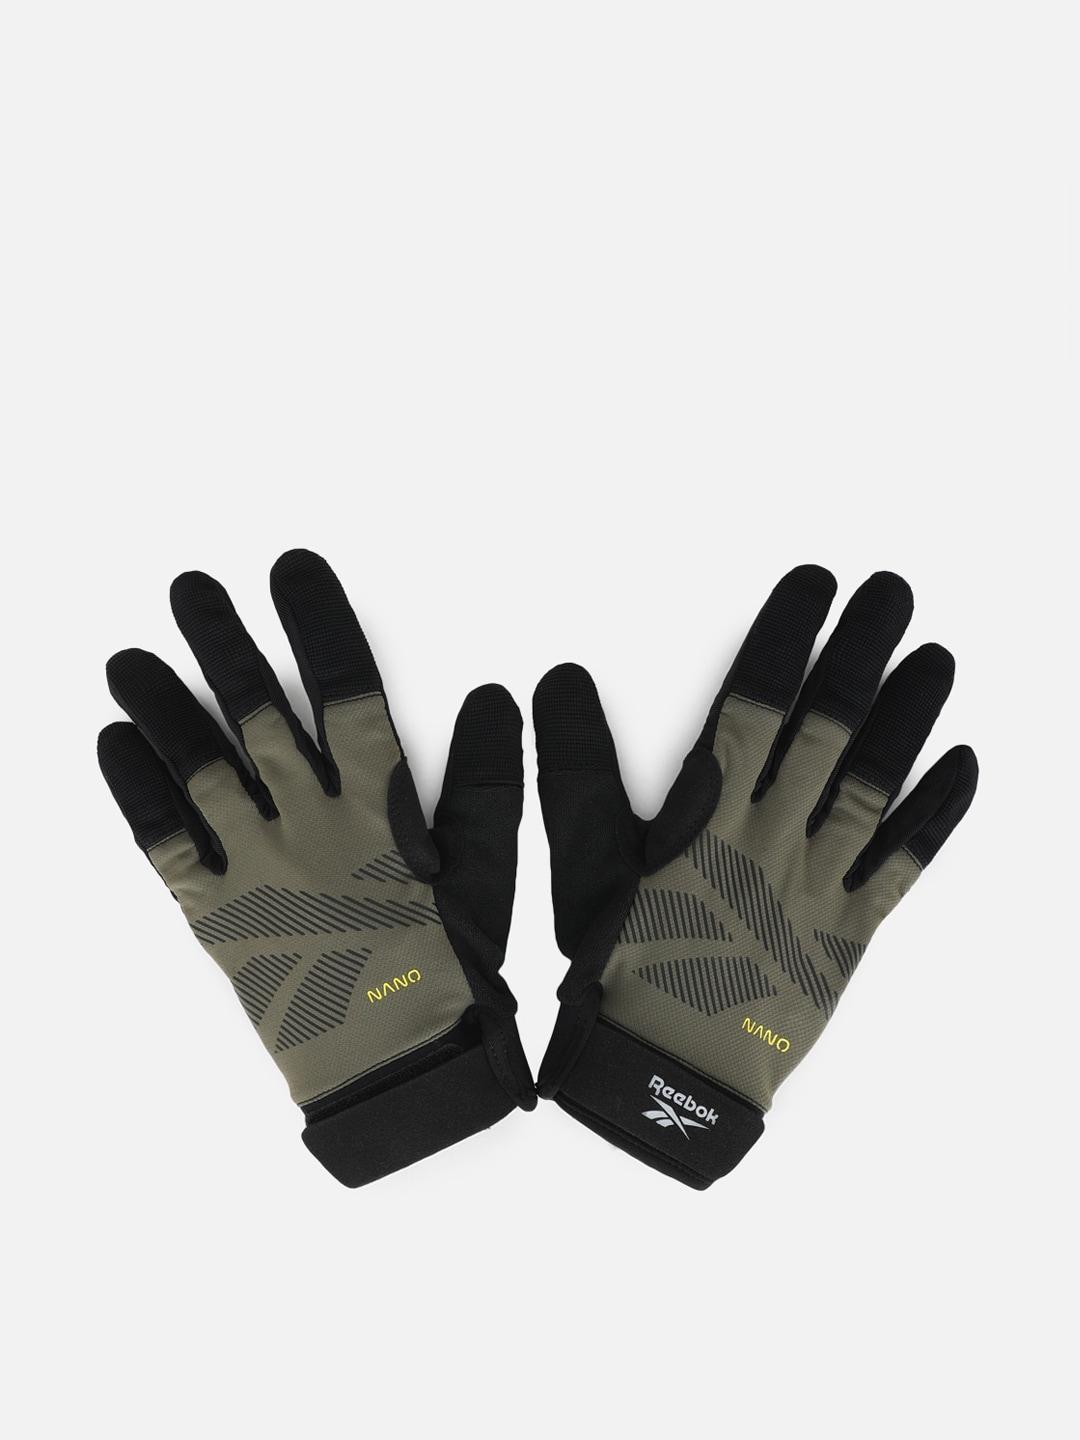 reebok men ubf athlete series logo printed gloves